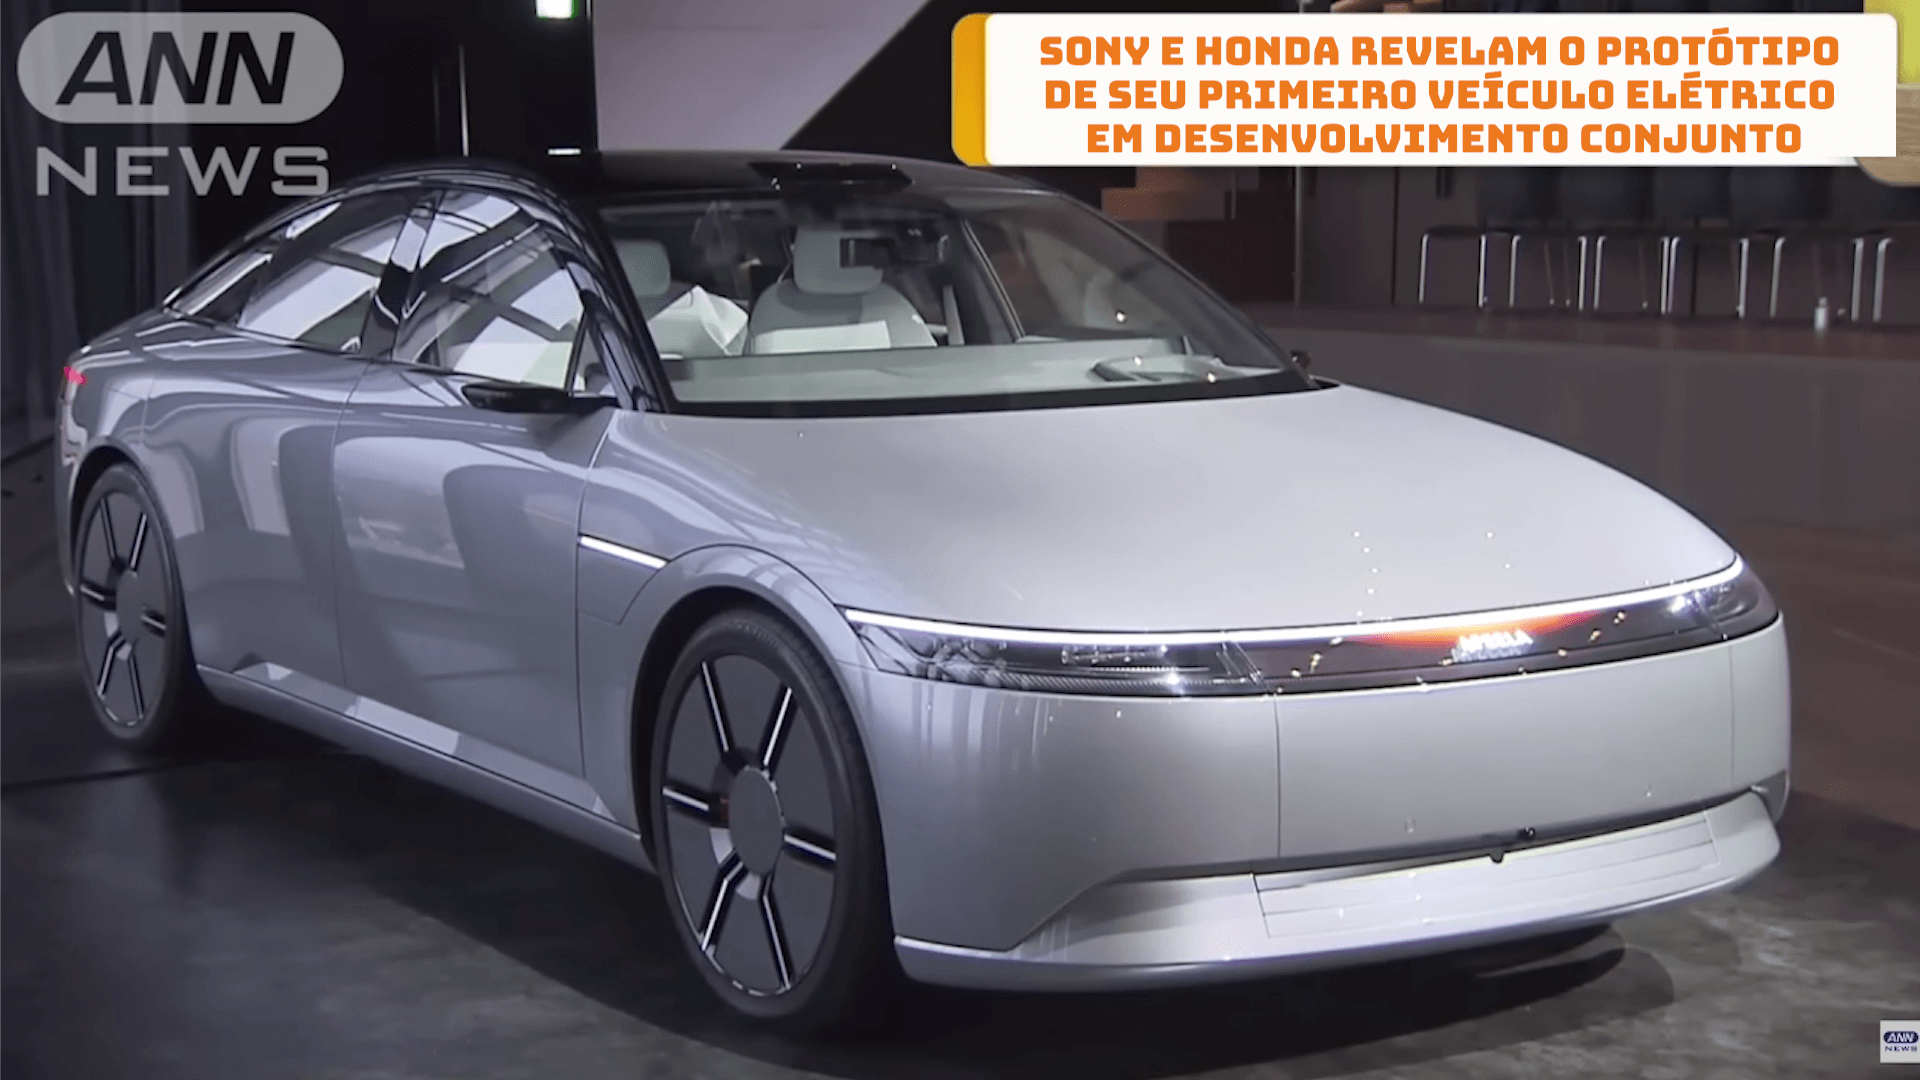 Sony e Honda revelam o protótipo de seu primeiro veículo elétrico em desenvolvimento conjunto